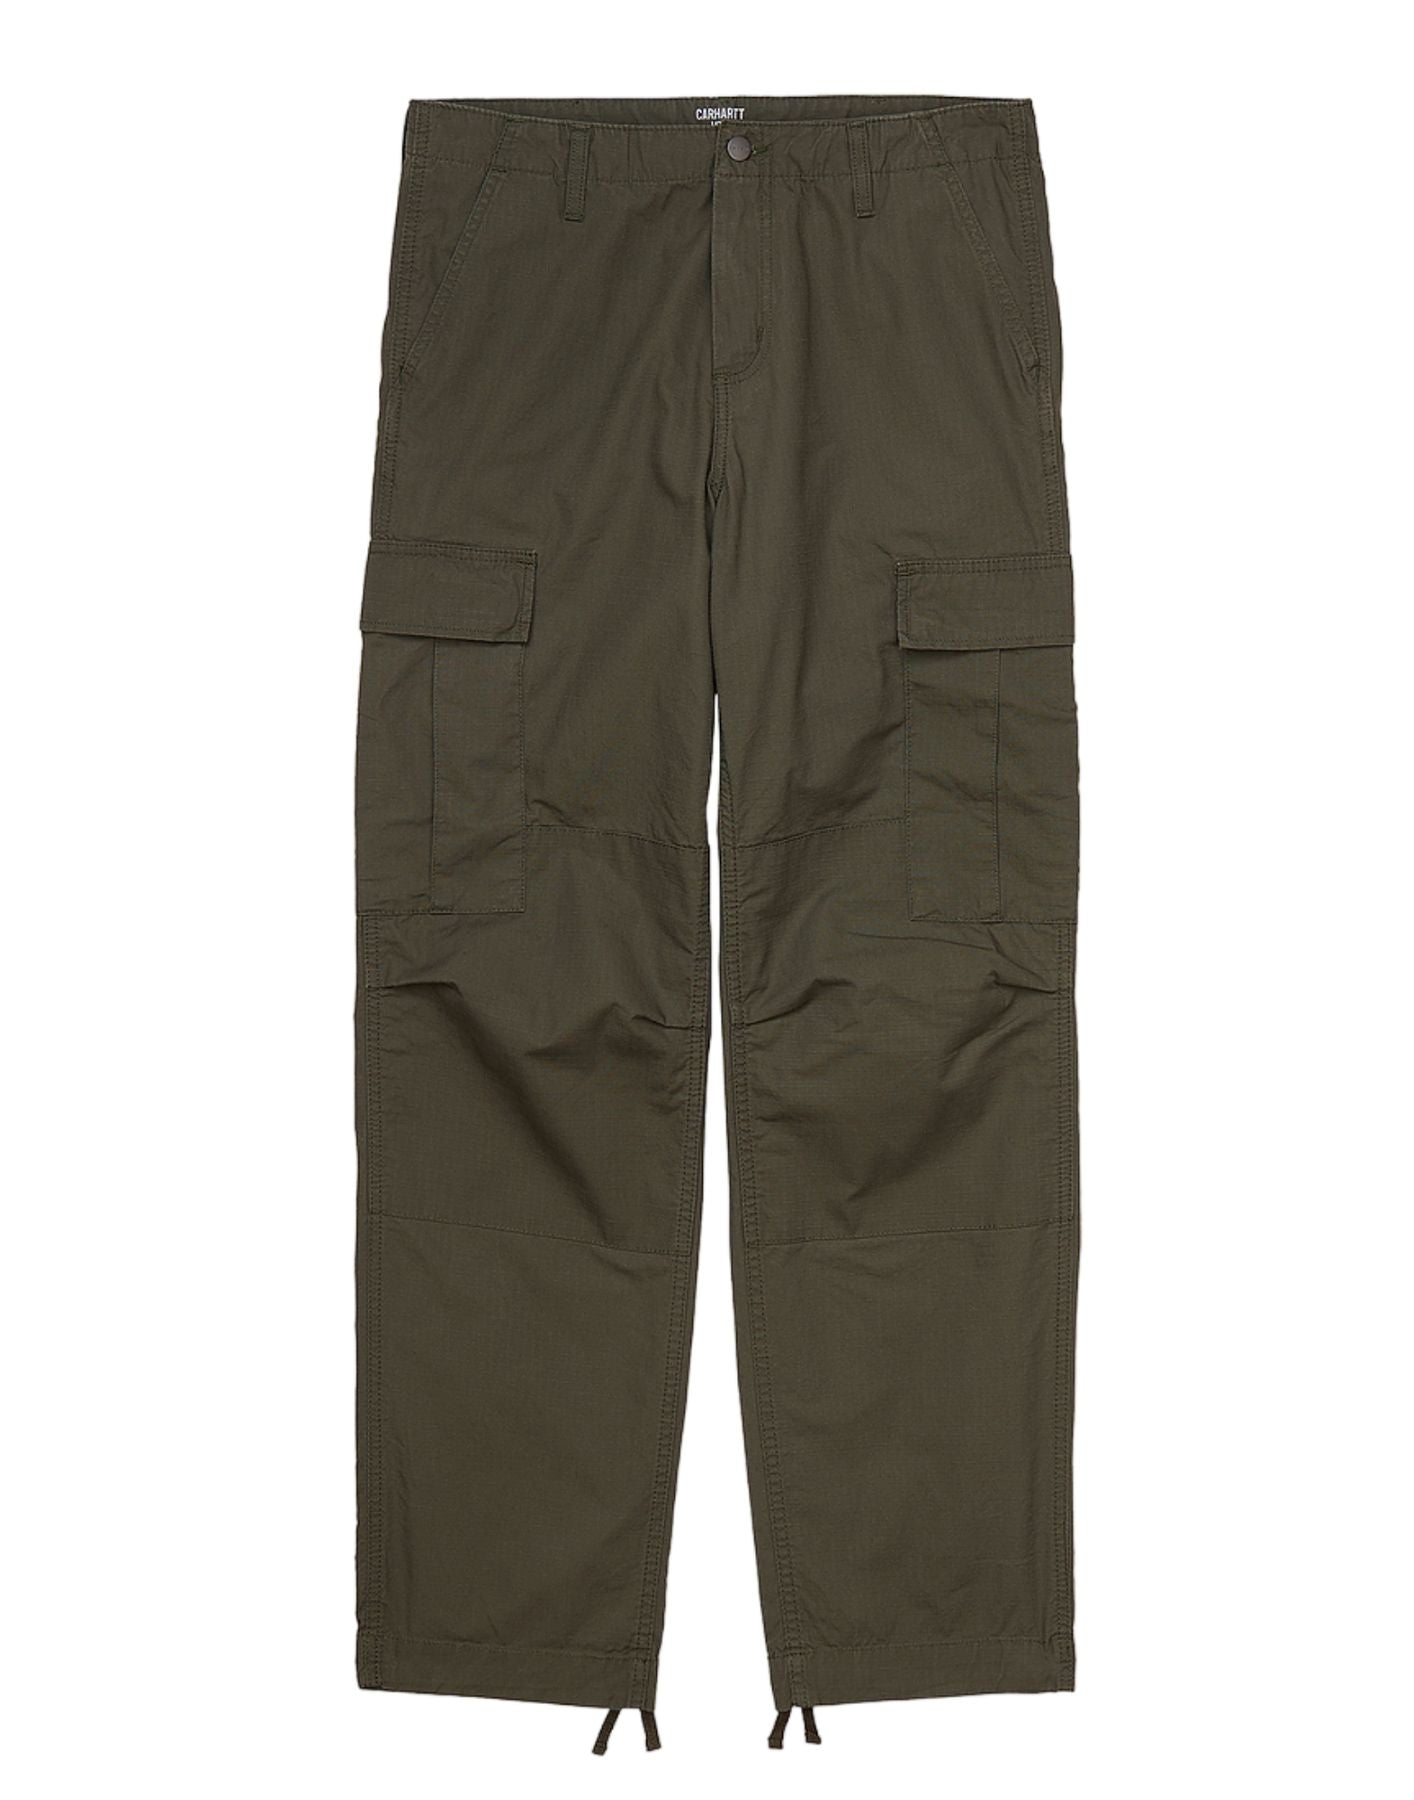 Pantalones para hombre I032467 TABACO CARHARTT WIP